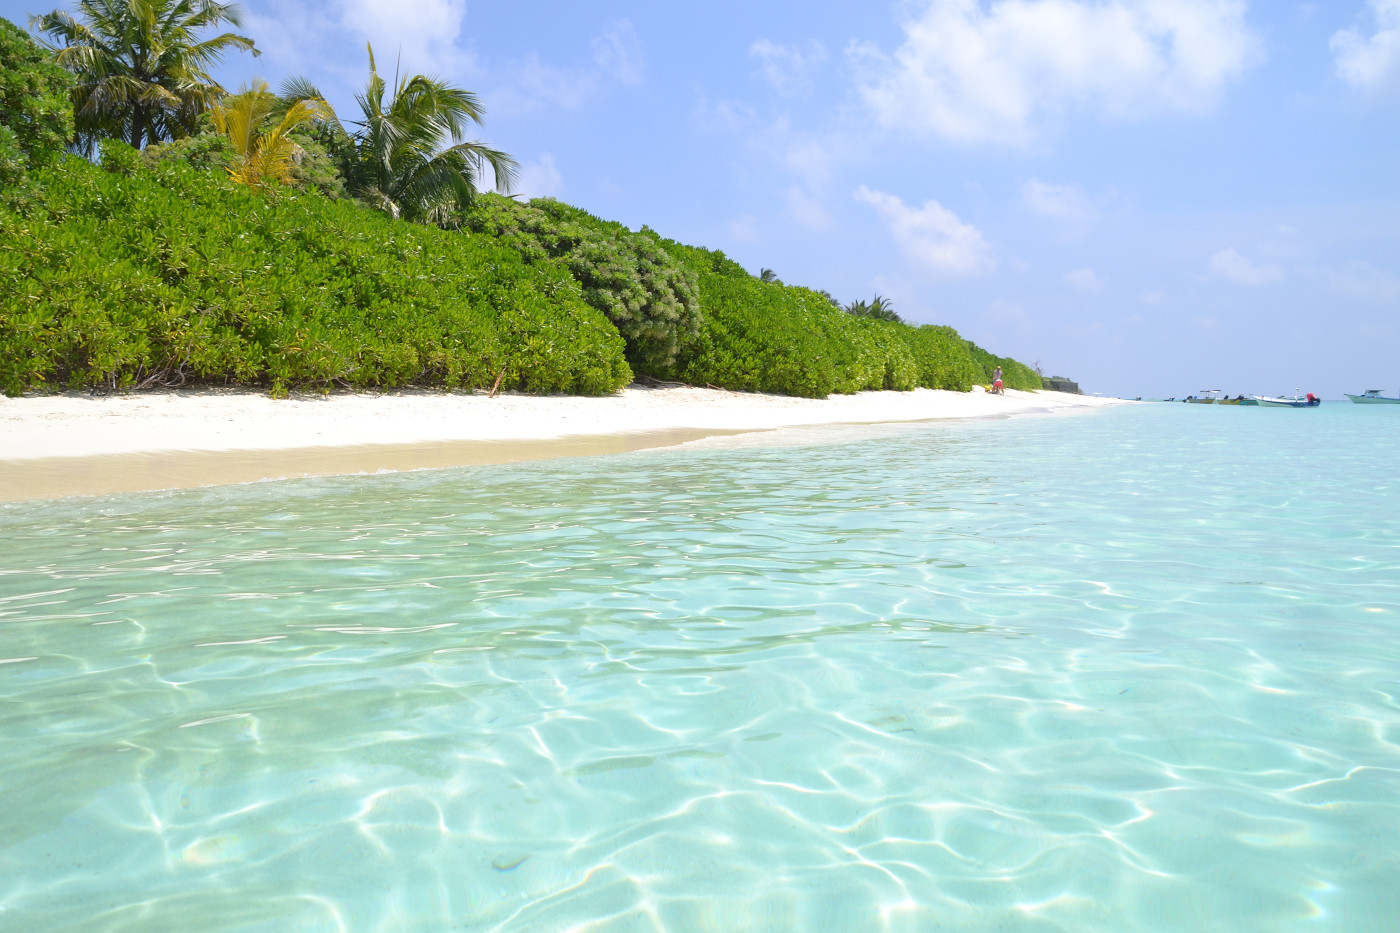 Фото 1. Пляж на острове Тодду (Thoddoo Island). В это райское место можно попасть, сделав пересадку в Астане и в Дели. Отчеты туристов о самостоятельном путешествии на Мальдивы. Настройки: В=1/400, f/10.0, ISO 100, ФР=55 мм.